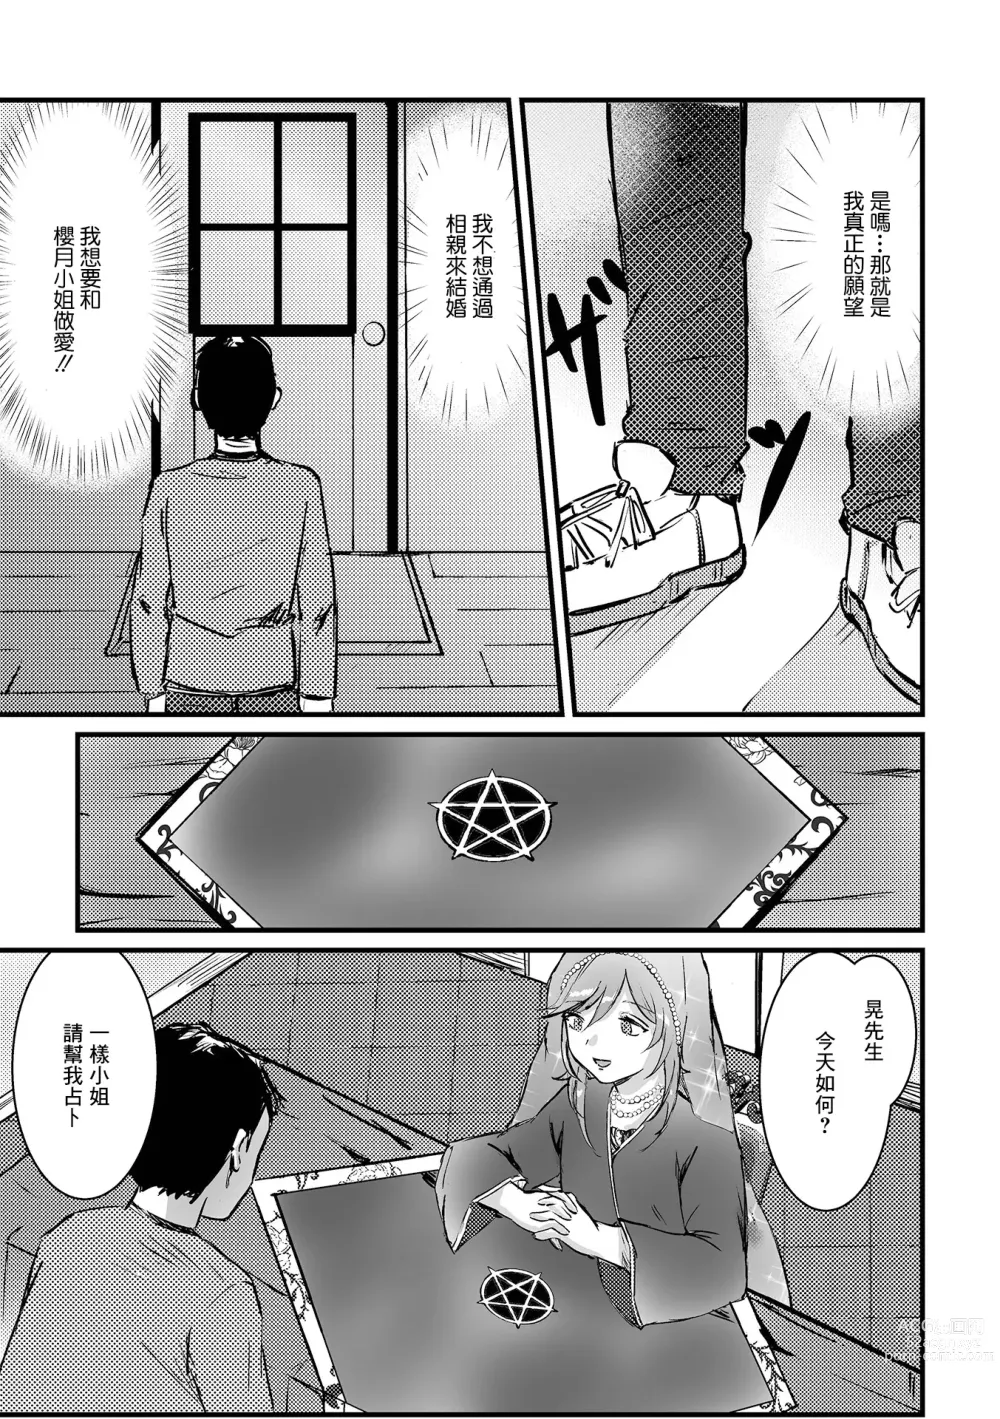 Page 5 of manga Uranaikan Anata no Yume o Kanaemasu